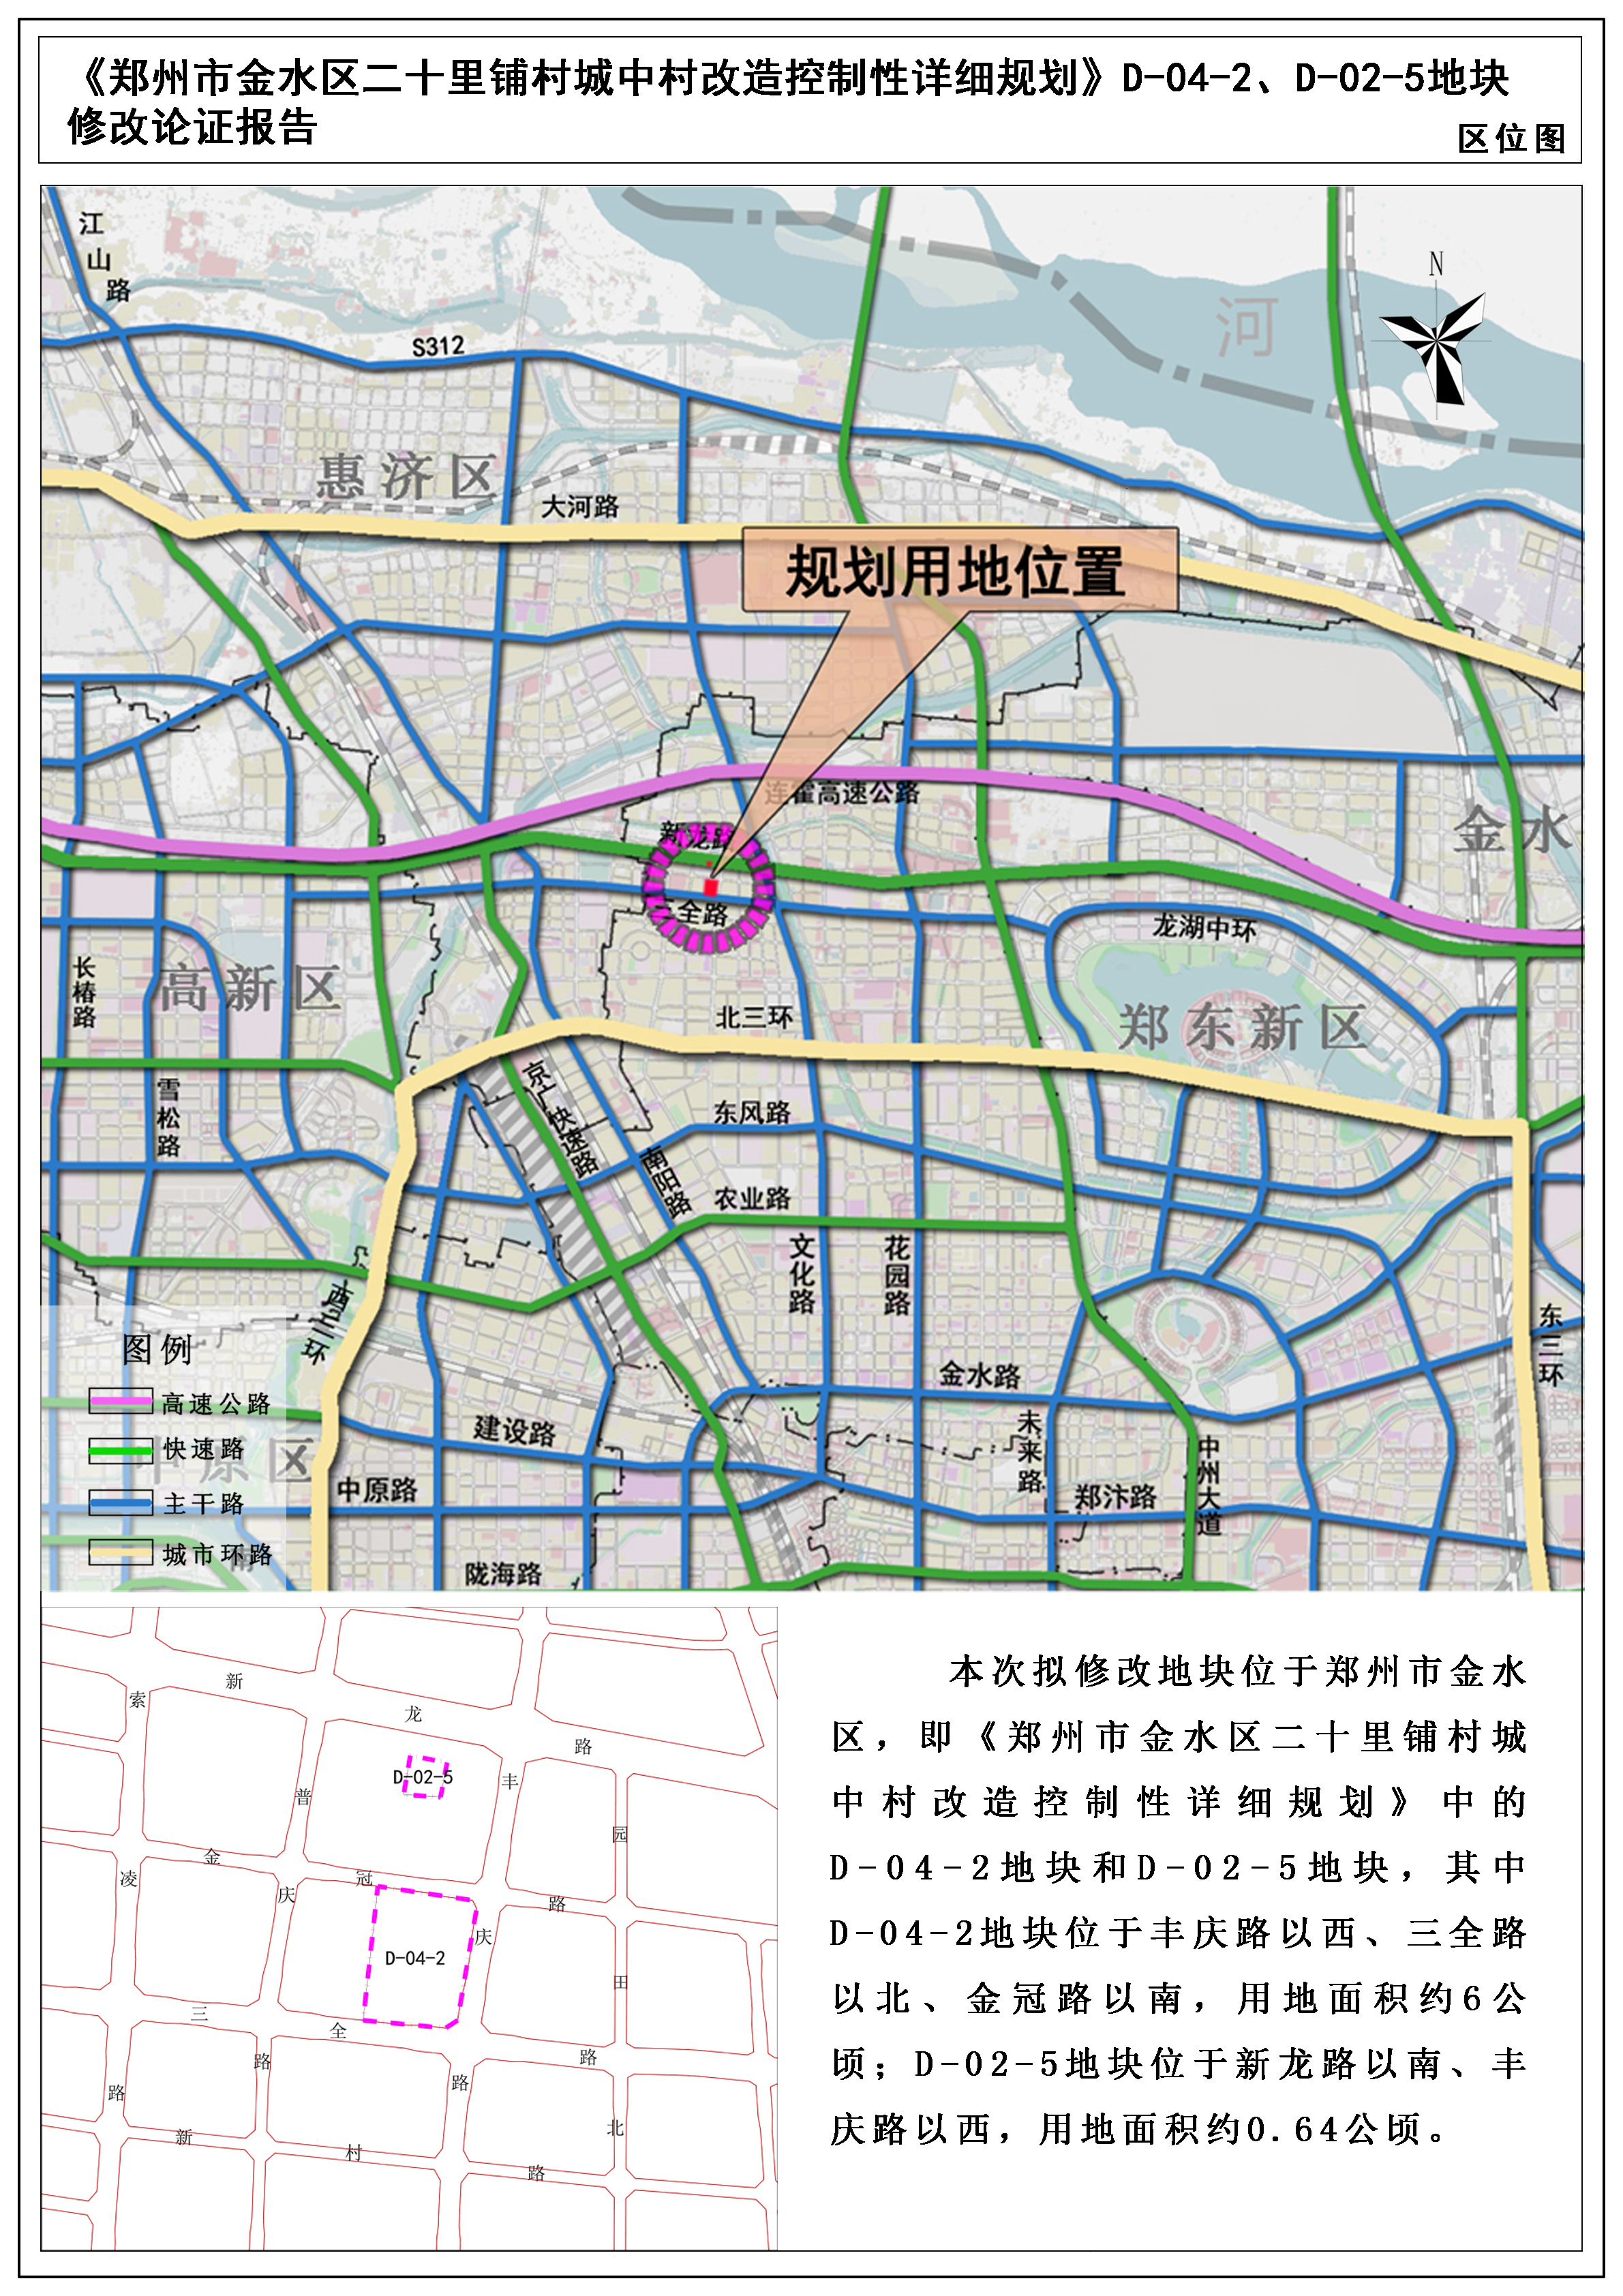 《郑州市金水区二十里铺村城中村改造控制性详细规划》D-04-2、D-02-5地块控规修改论证